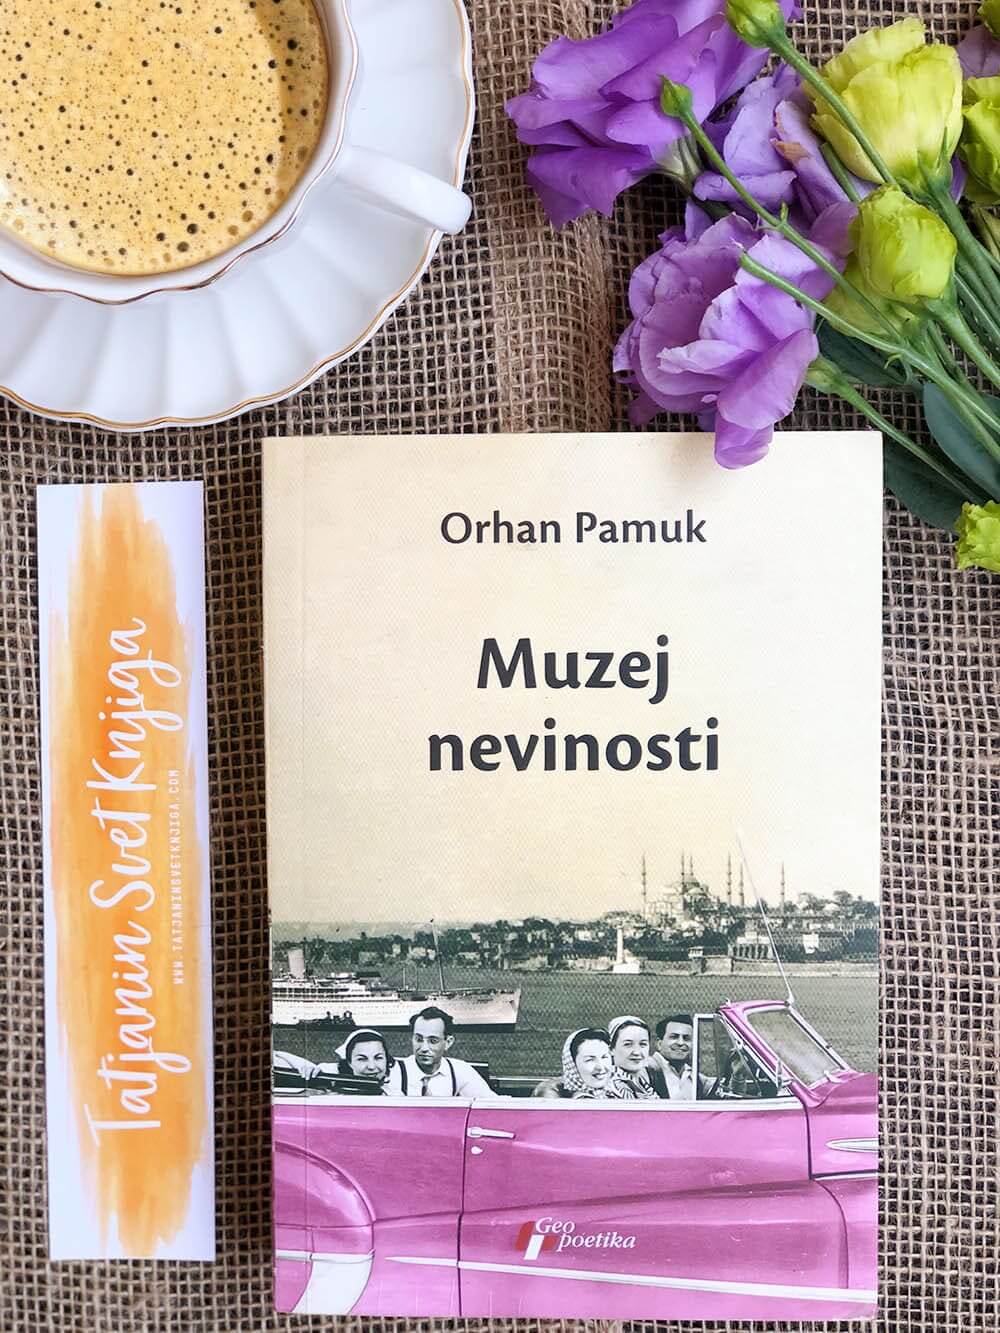 Orhan Pamuk “Muzej nevinosti”